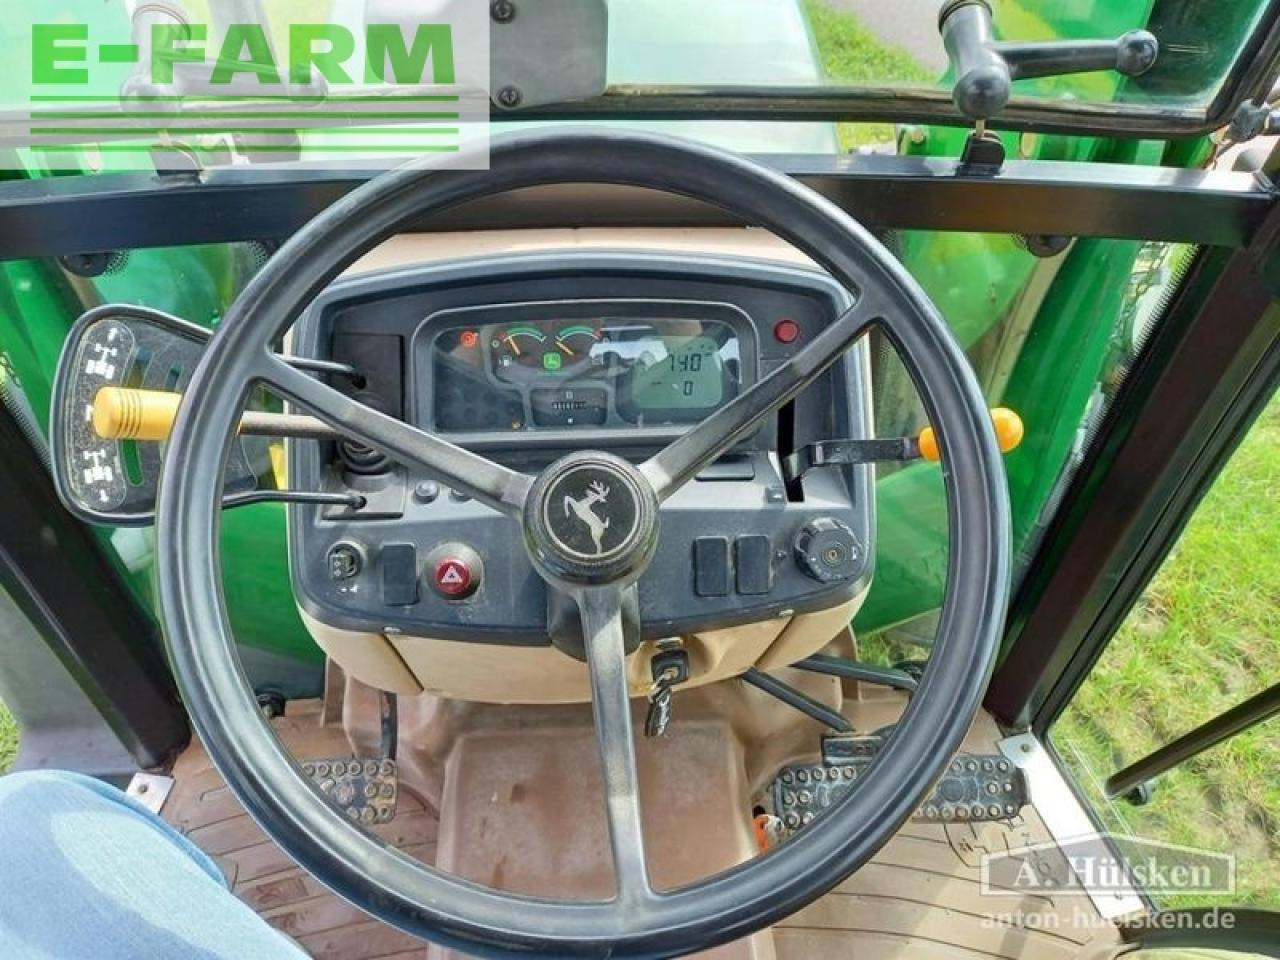 Farm tractor John Deere 5415 inkl. frontlader: picture 12